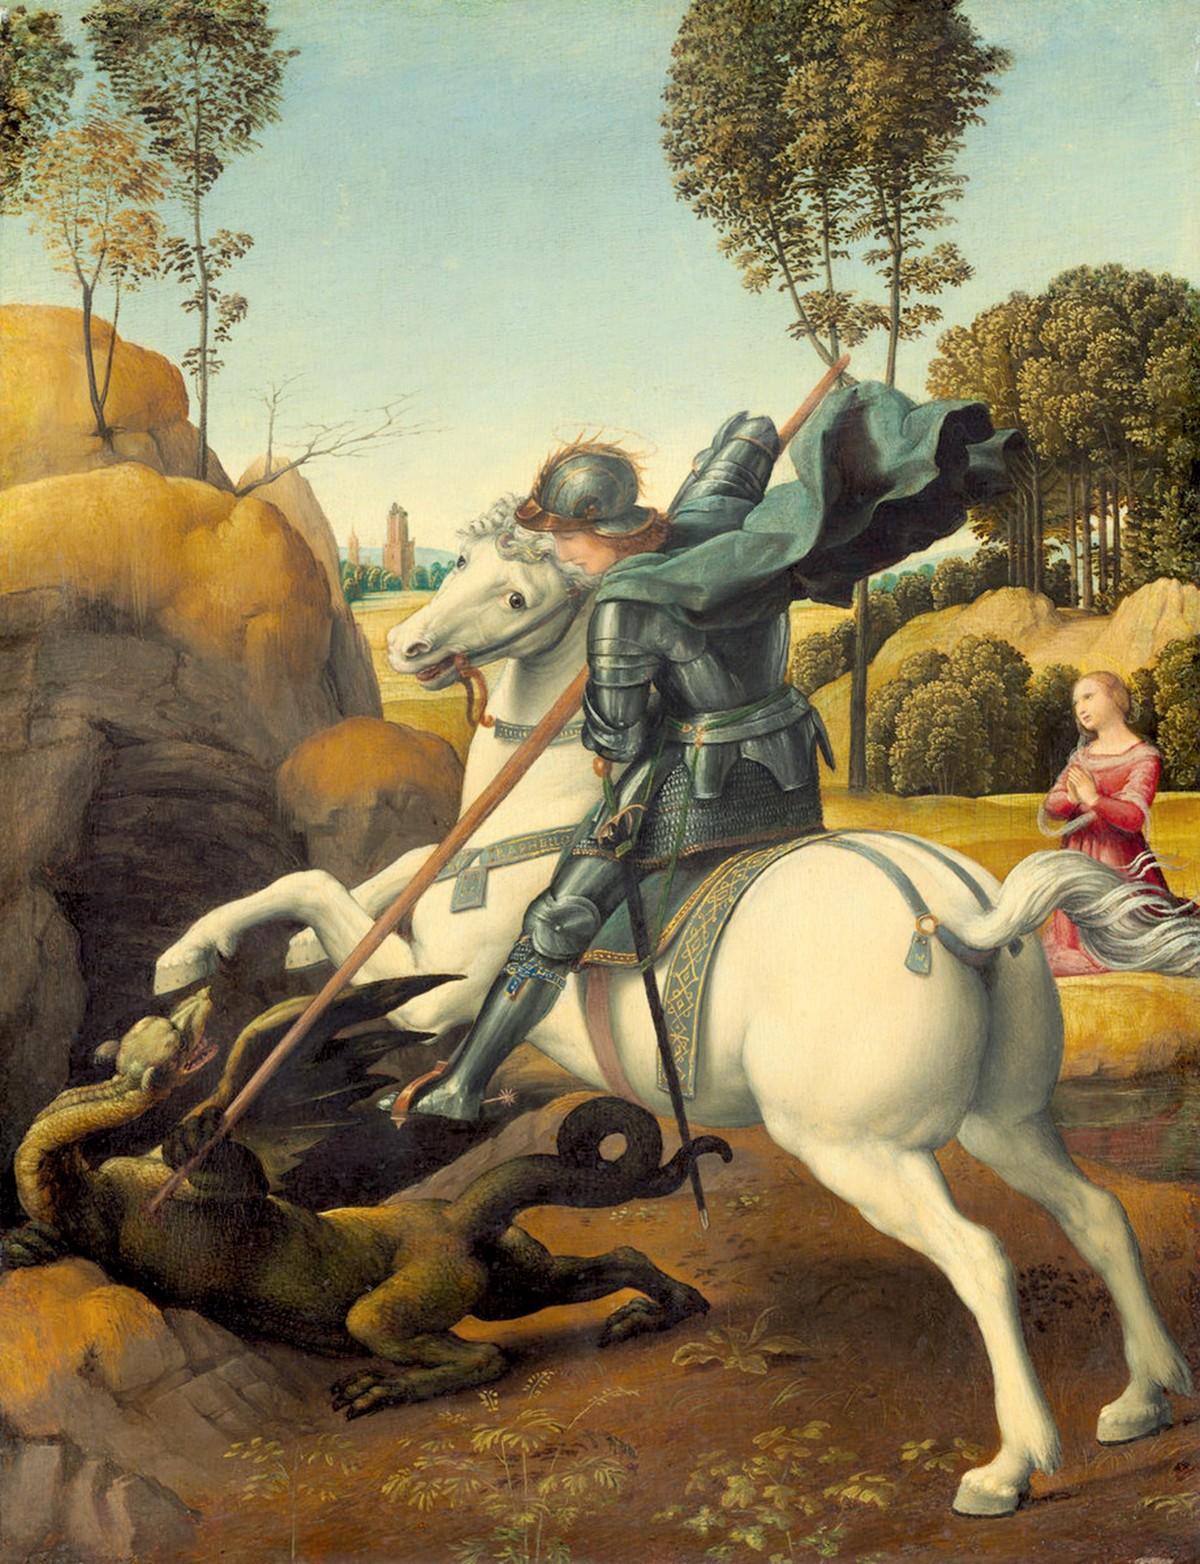 Peinture d'un homme sur un cheval tuant un dragon avec une lance. Une princesse semble inquiète en arrière plan.